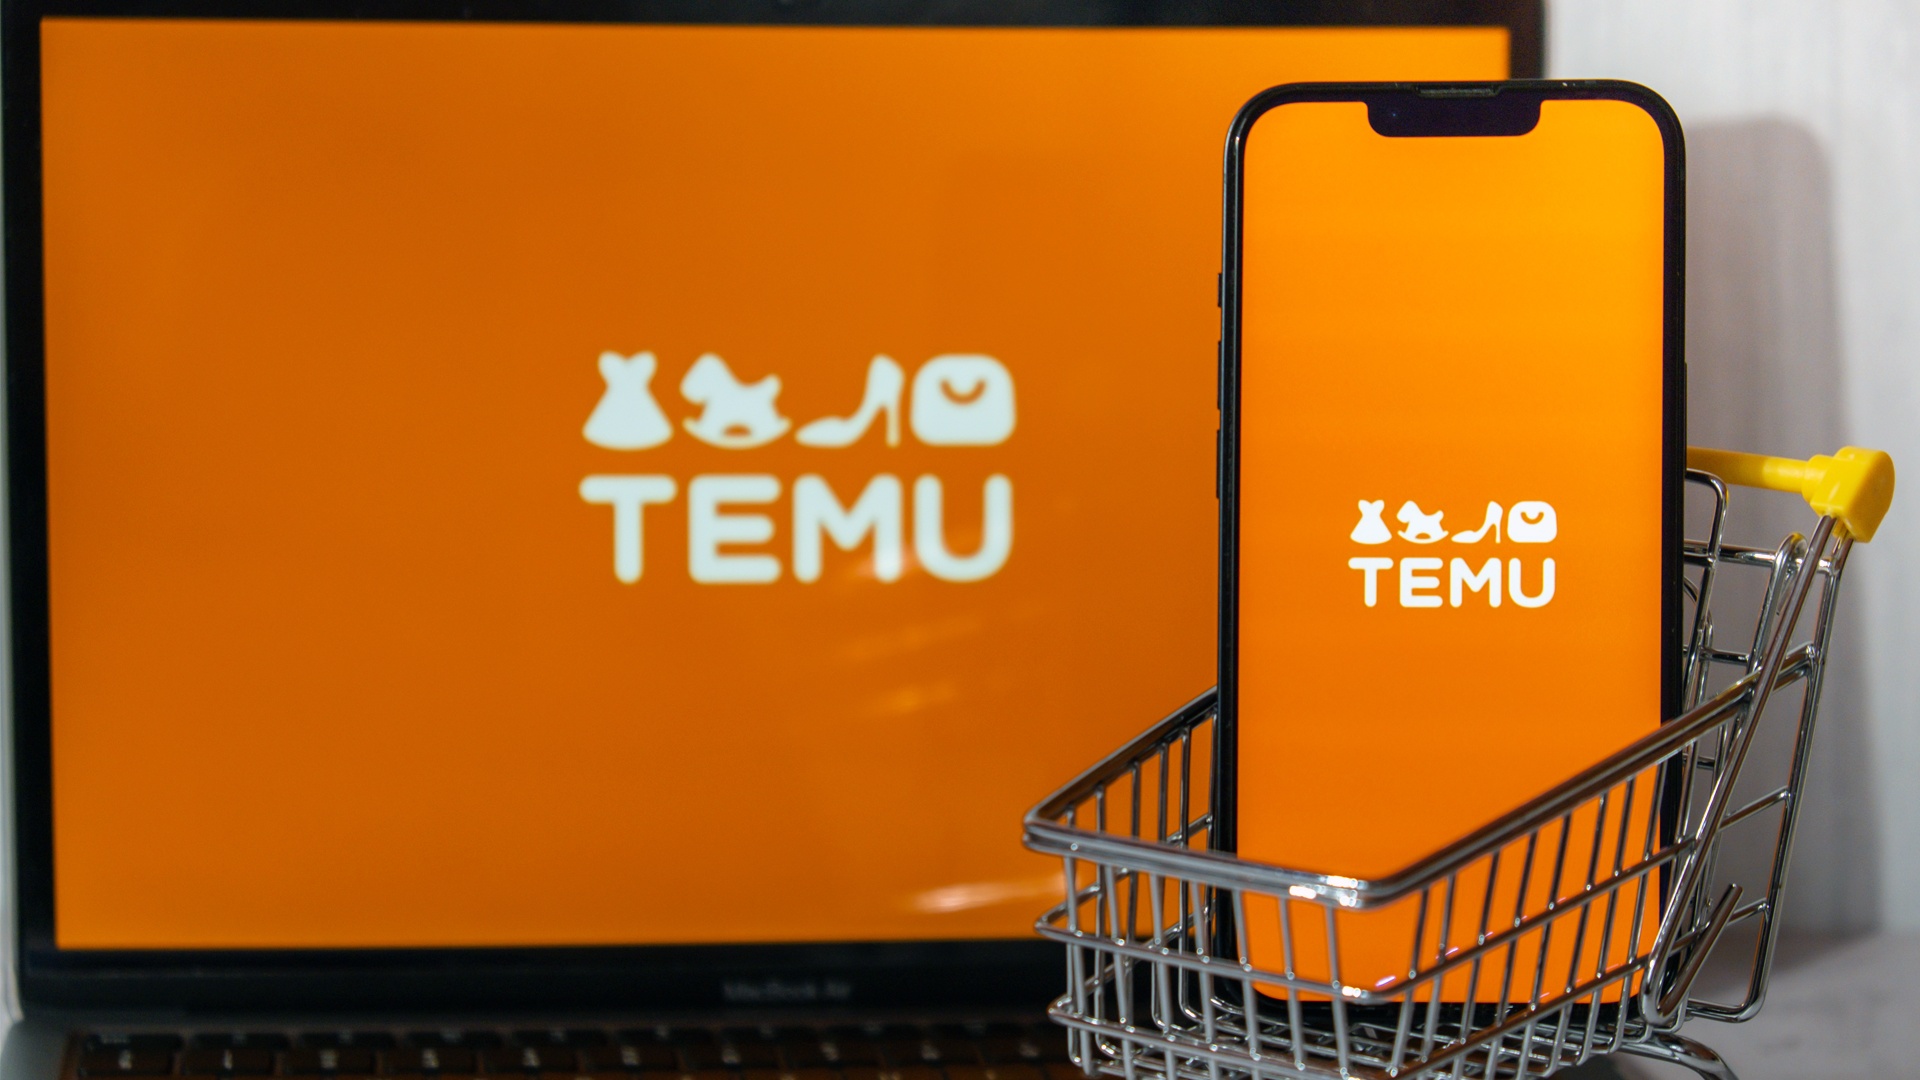 Absurd billig oder seriös: Was ist Temu und solltet ihr es nutzen?